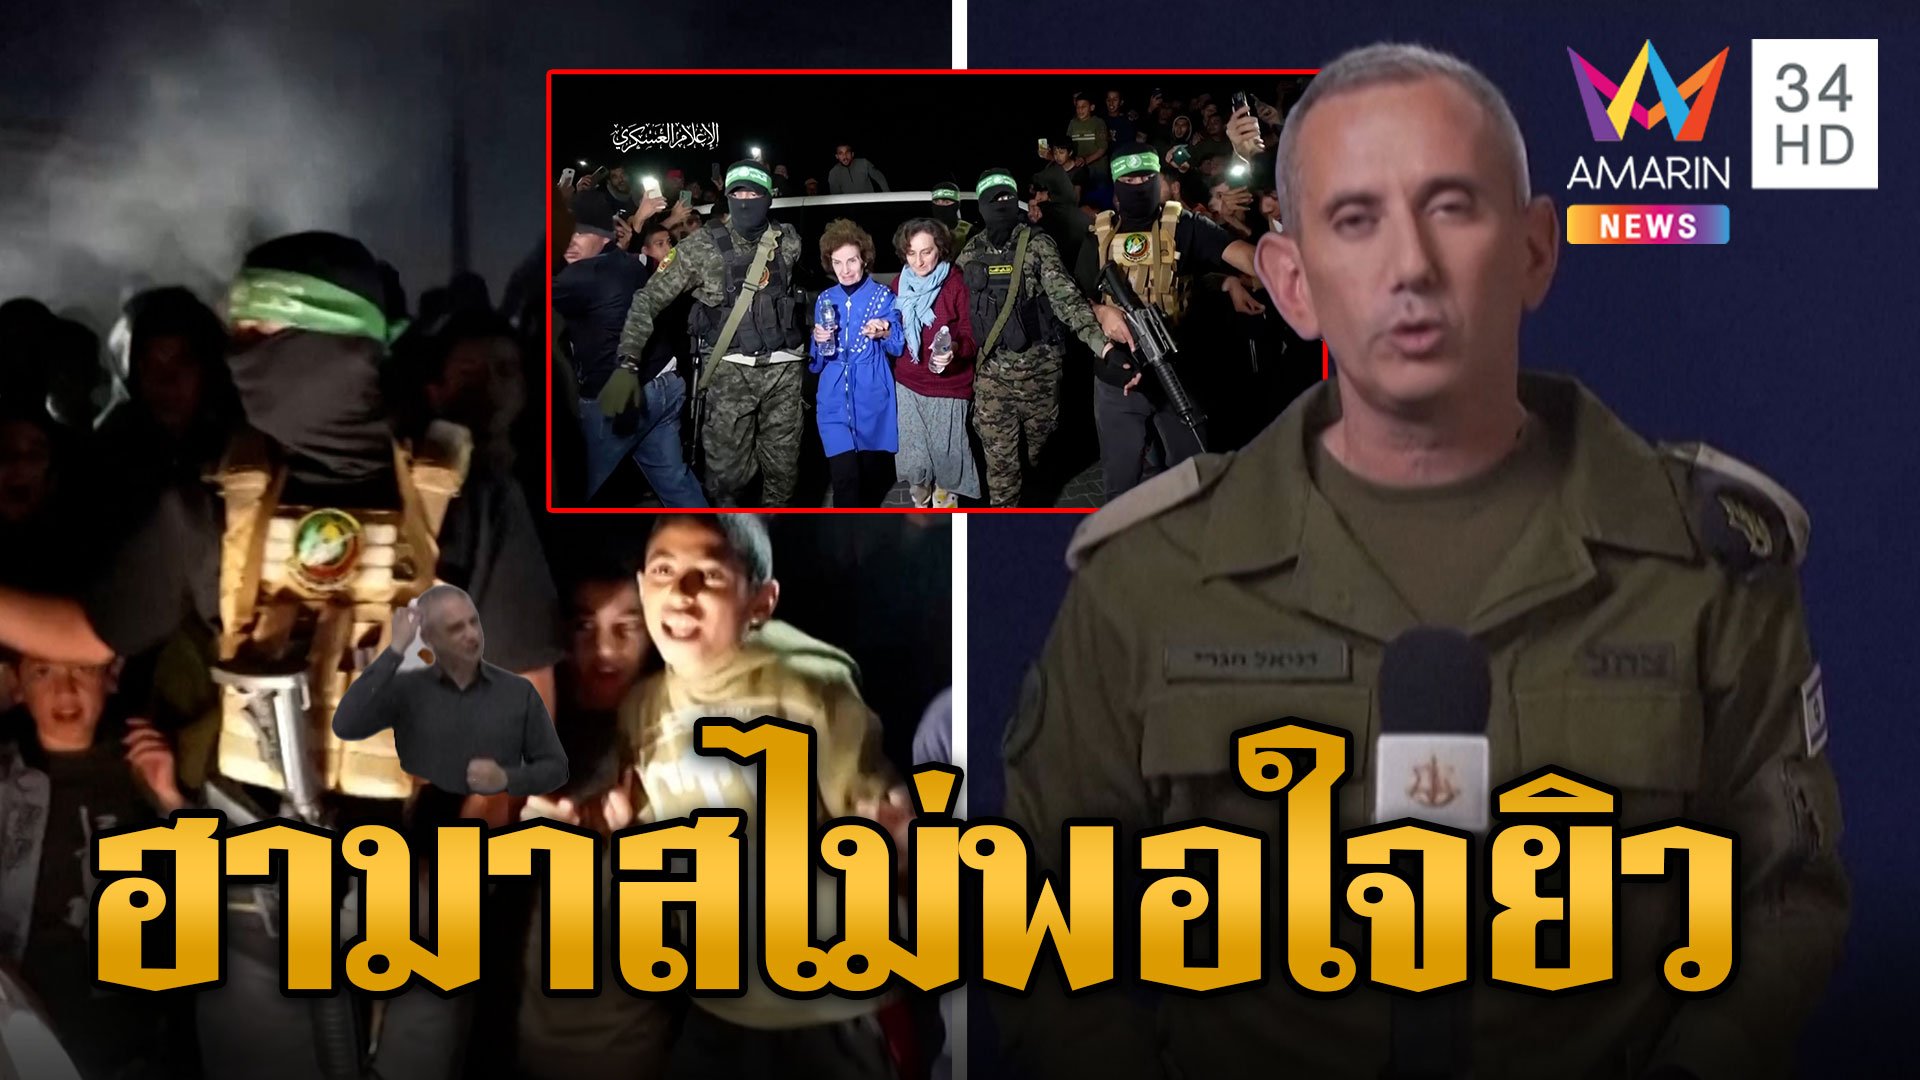 ฮามาสปล่อยตัวประกันอีก คนไทยถูกปล่อยแล้ว 23 คน ฮามาสยังไม่พอใจยิวขังก๊วนนักโทษ | ข่าวอรุณอมรินทร์ | 30 พ.ย. 66 | AMARIN TVHD34